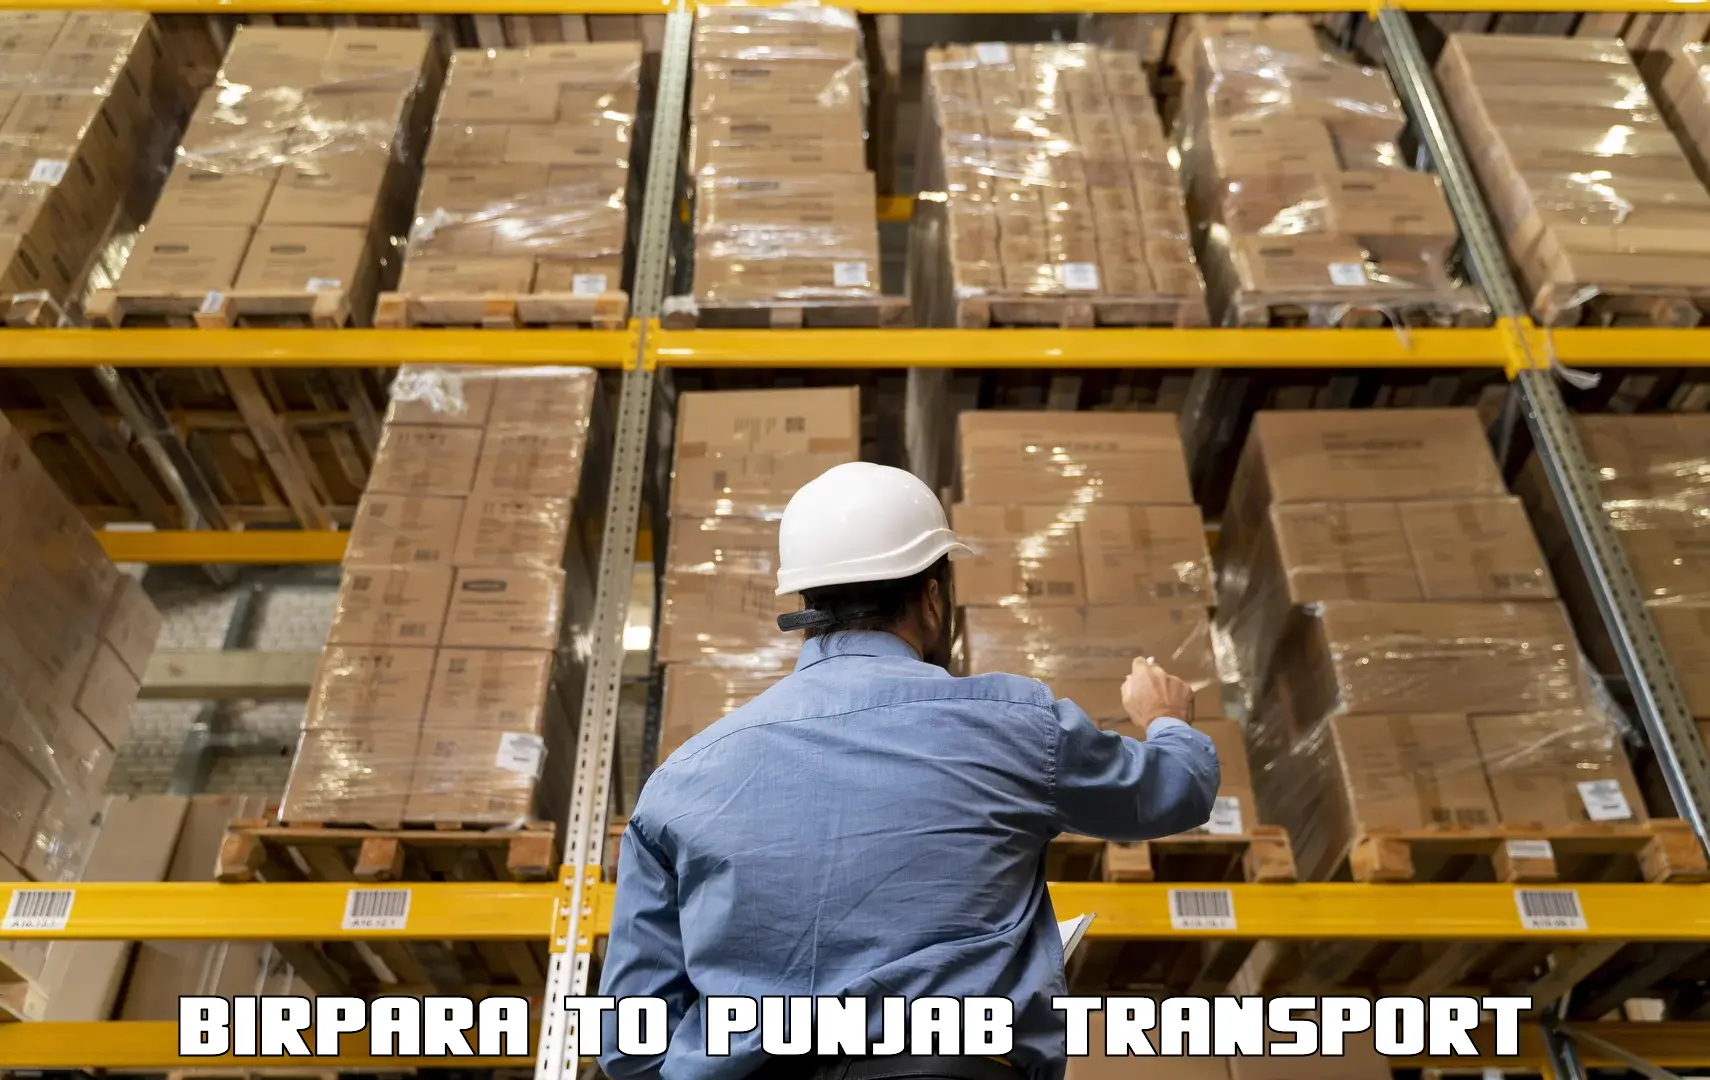 Bike shipping service Birpara to Patti Tarn Tara